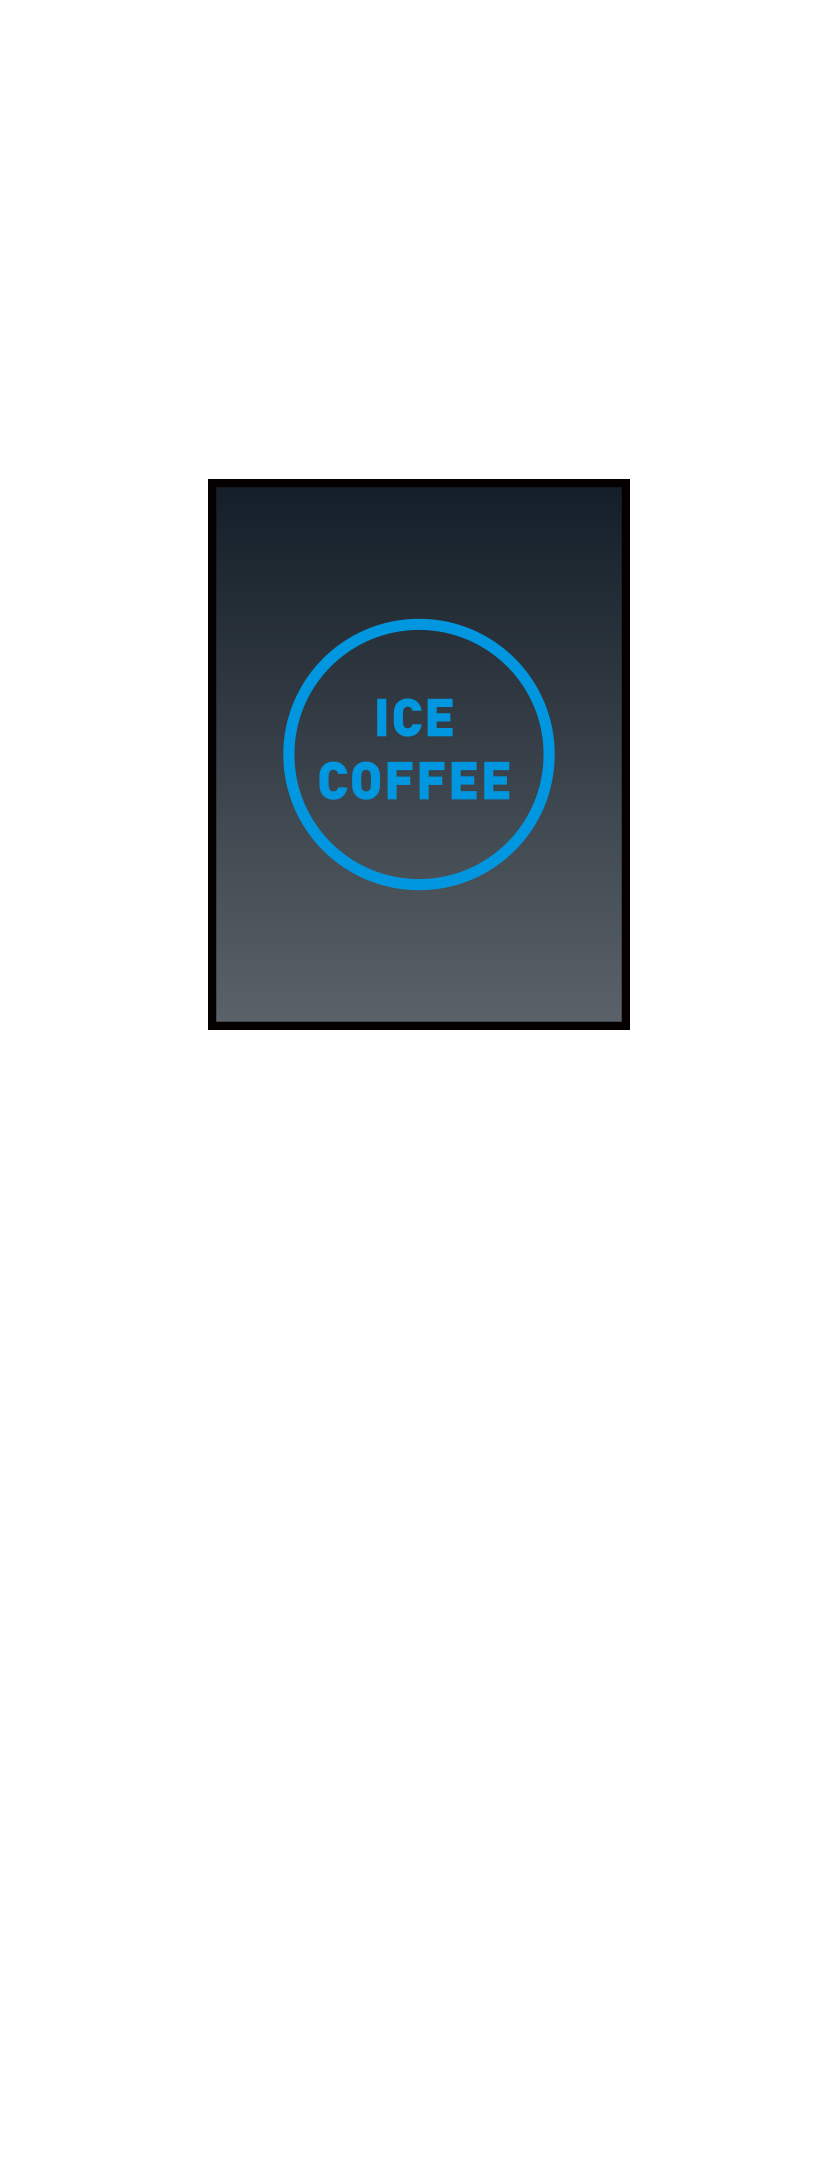 iCE COFFEE